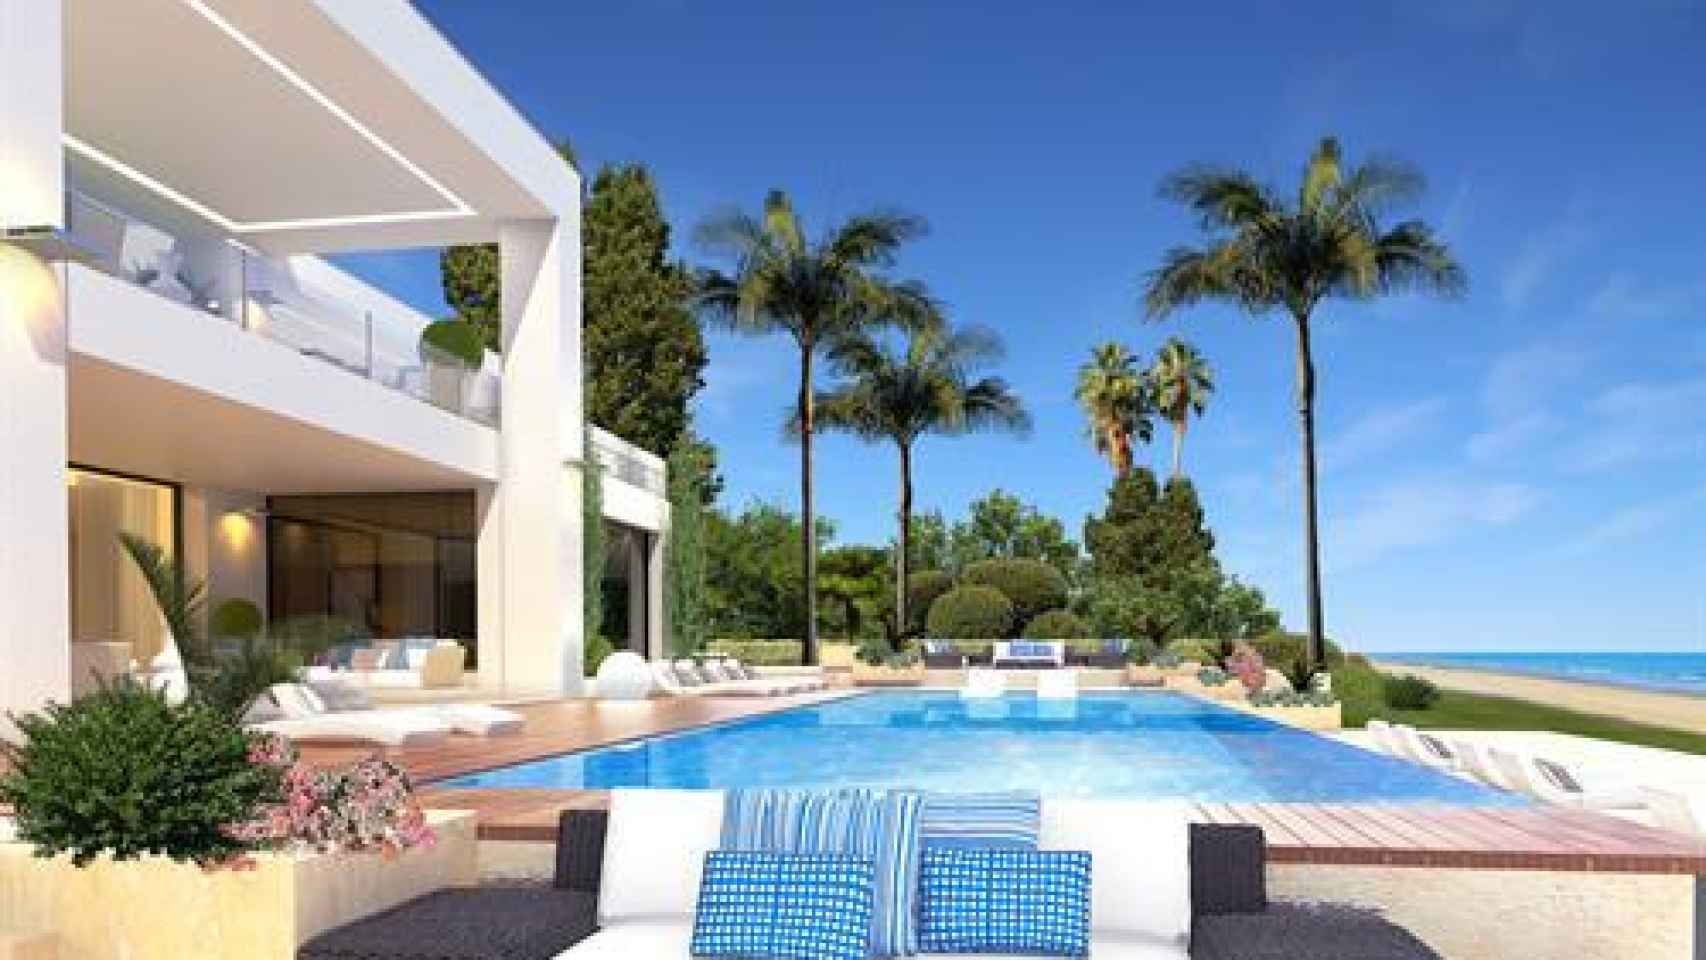 La casa más cara de España se encuentra en Málaga y cuesta 29 millones de euros, según Idealista